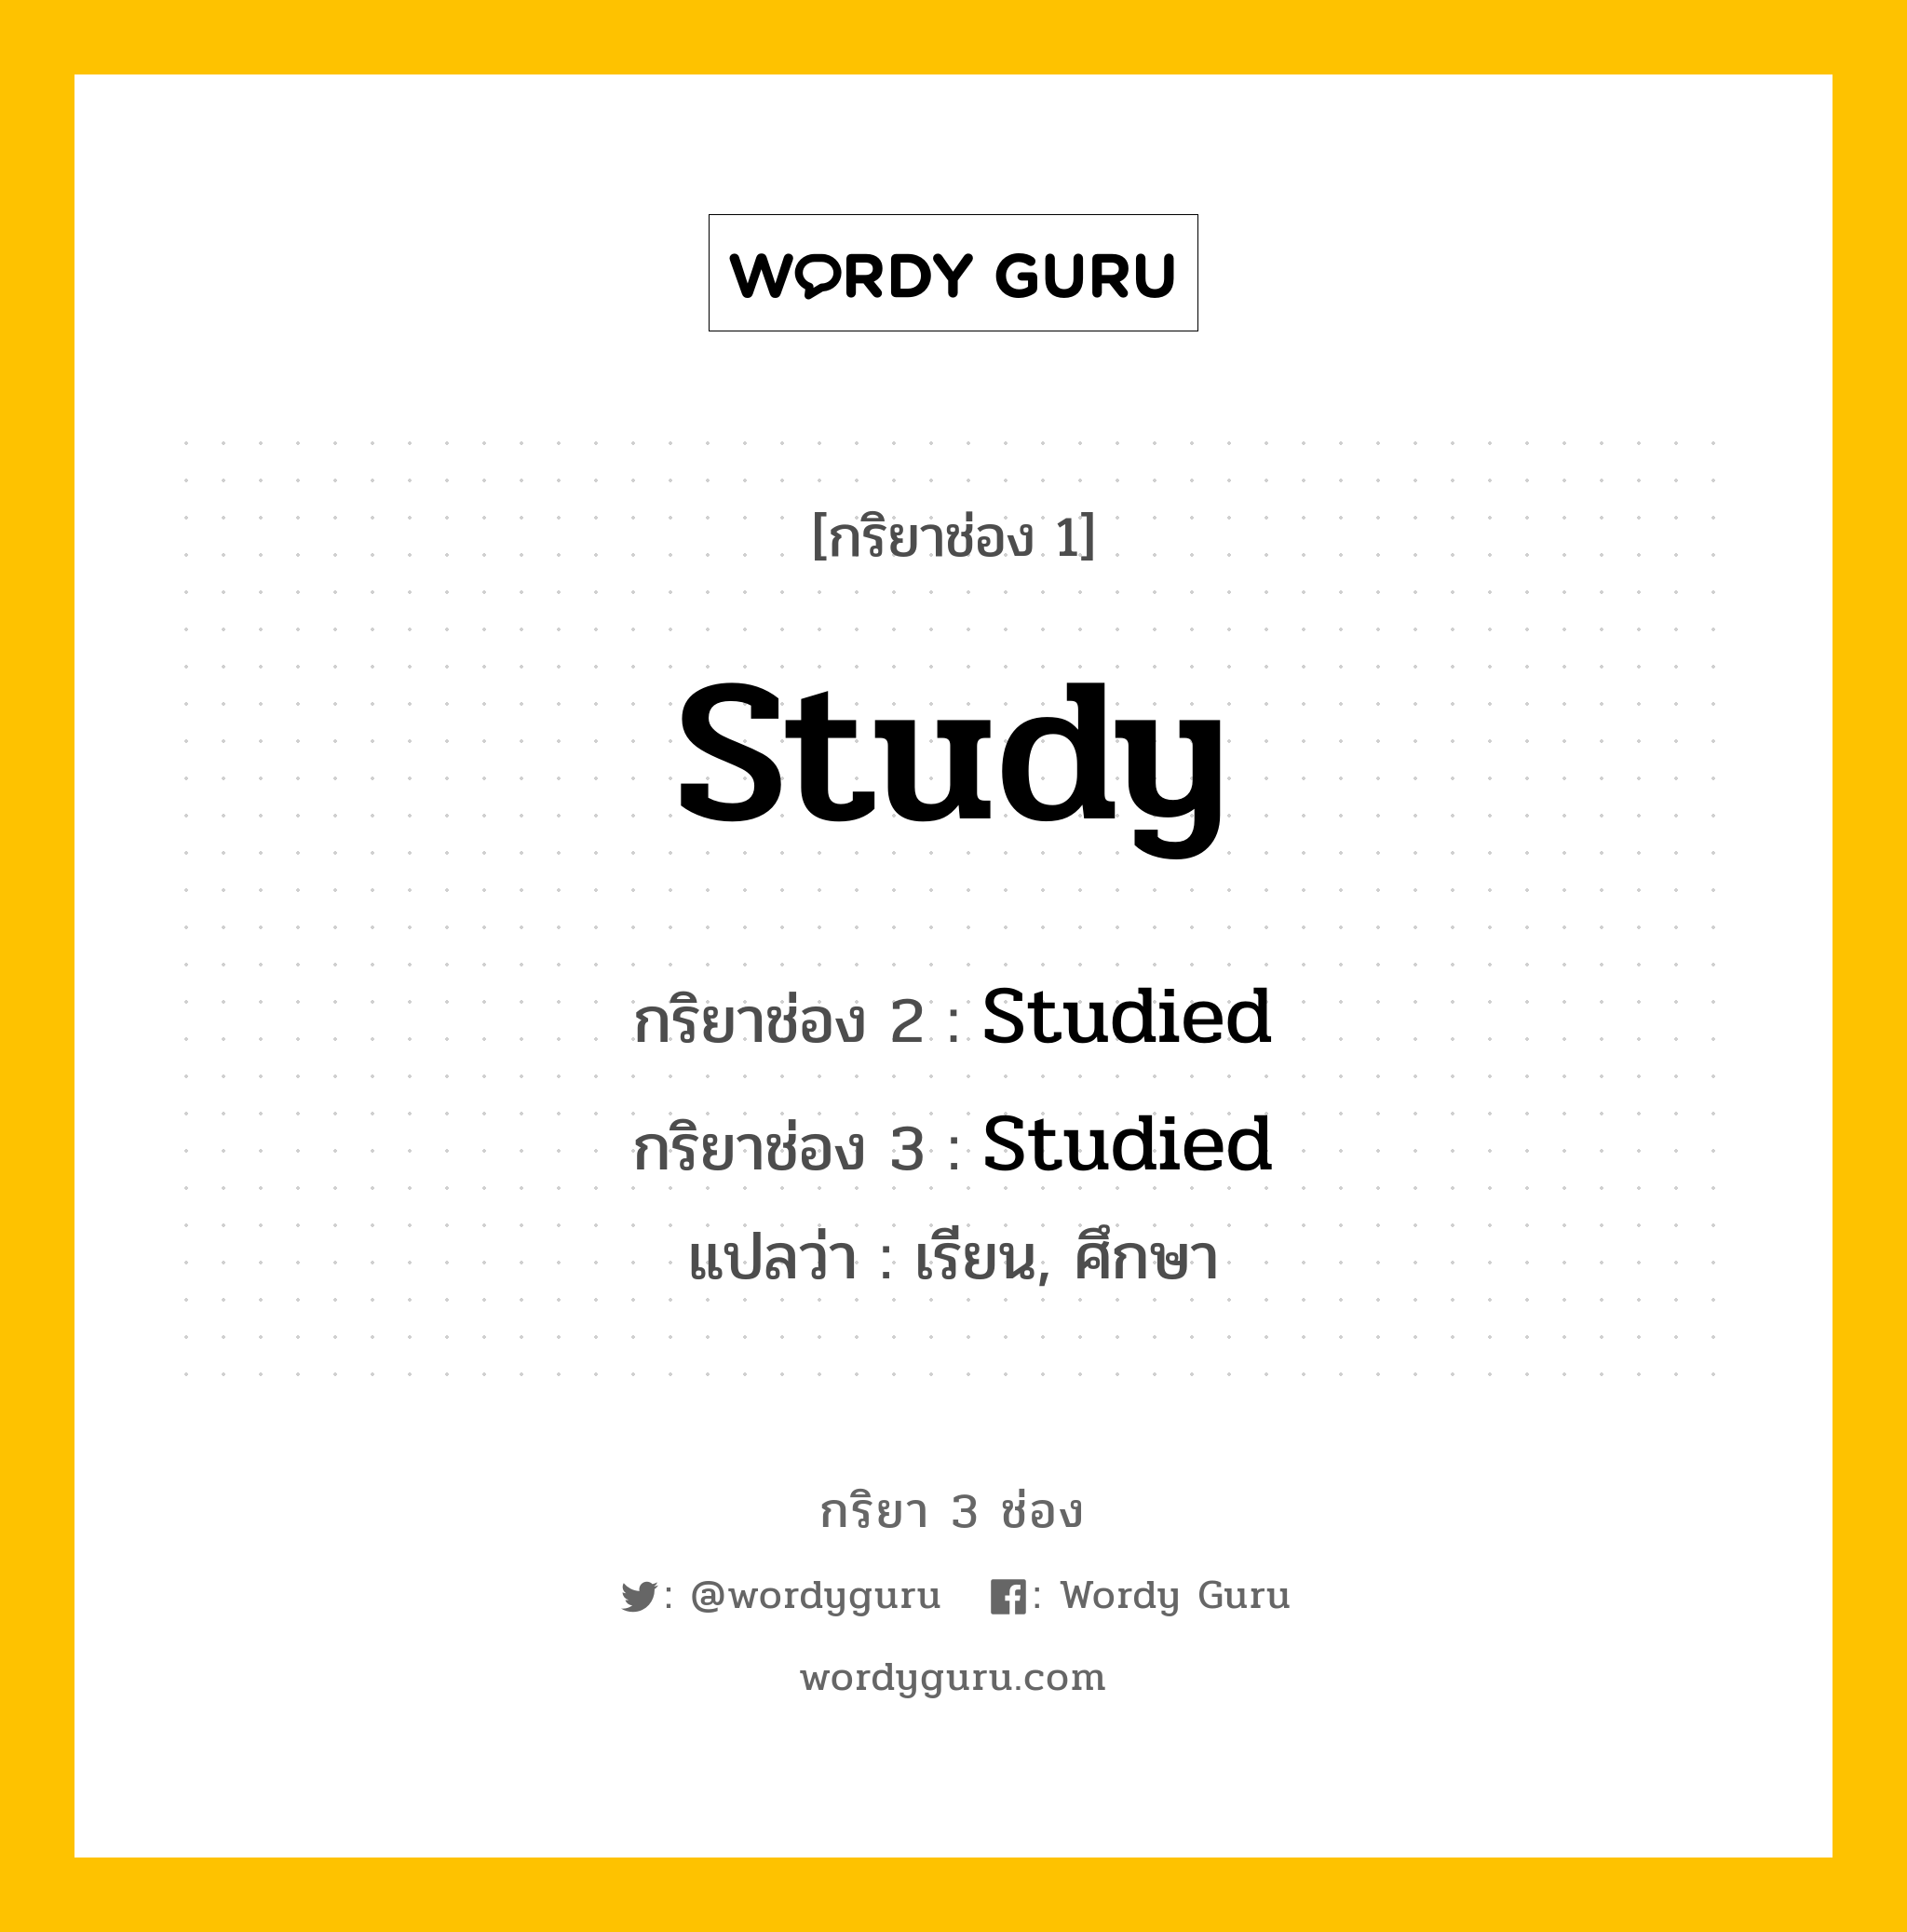 กริยา 3 ช่อง: Study ช่อง 2 Study ช่อง 3 คืออะไร, กริยาช่อง 1 Study กริยาช่อง 2 Studied กริยาช่อง 3 Studied แปลว่า เรียน, ศึกษา หมวด Regular Verb